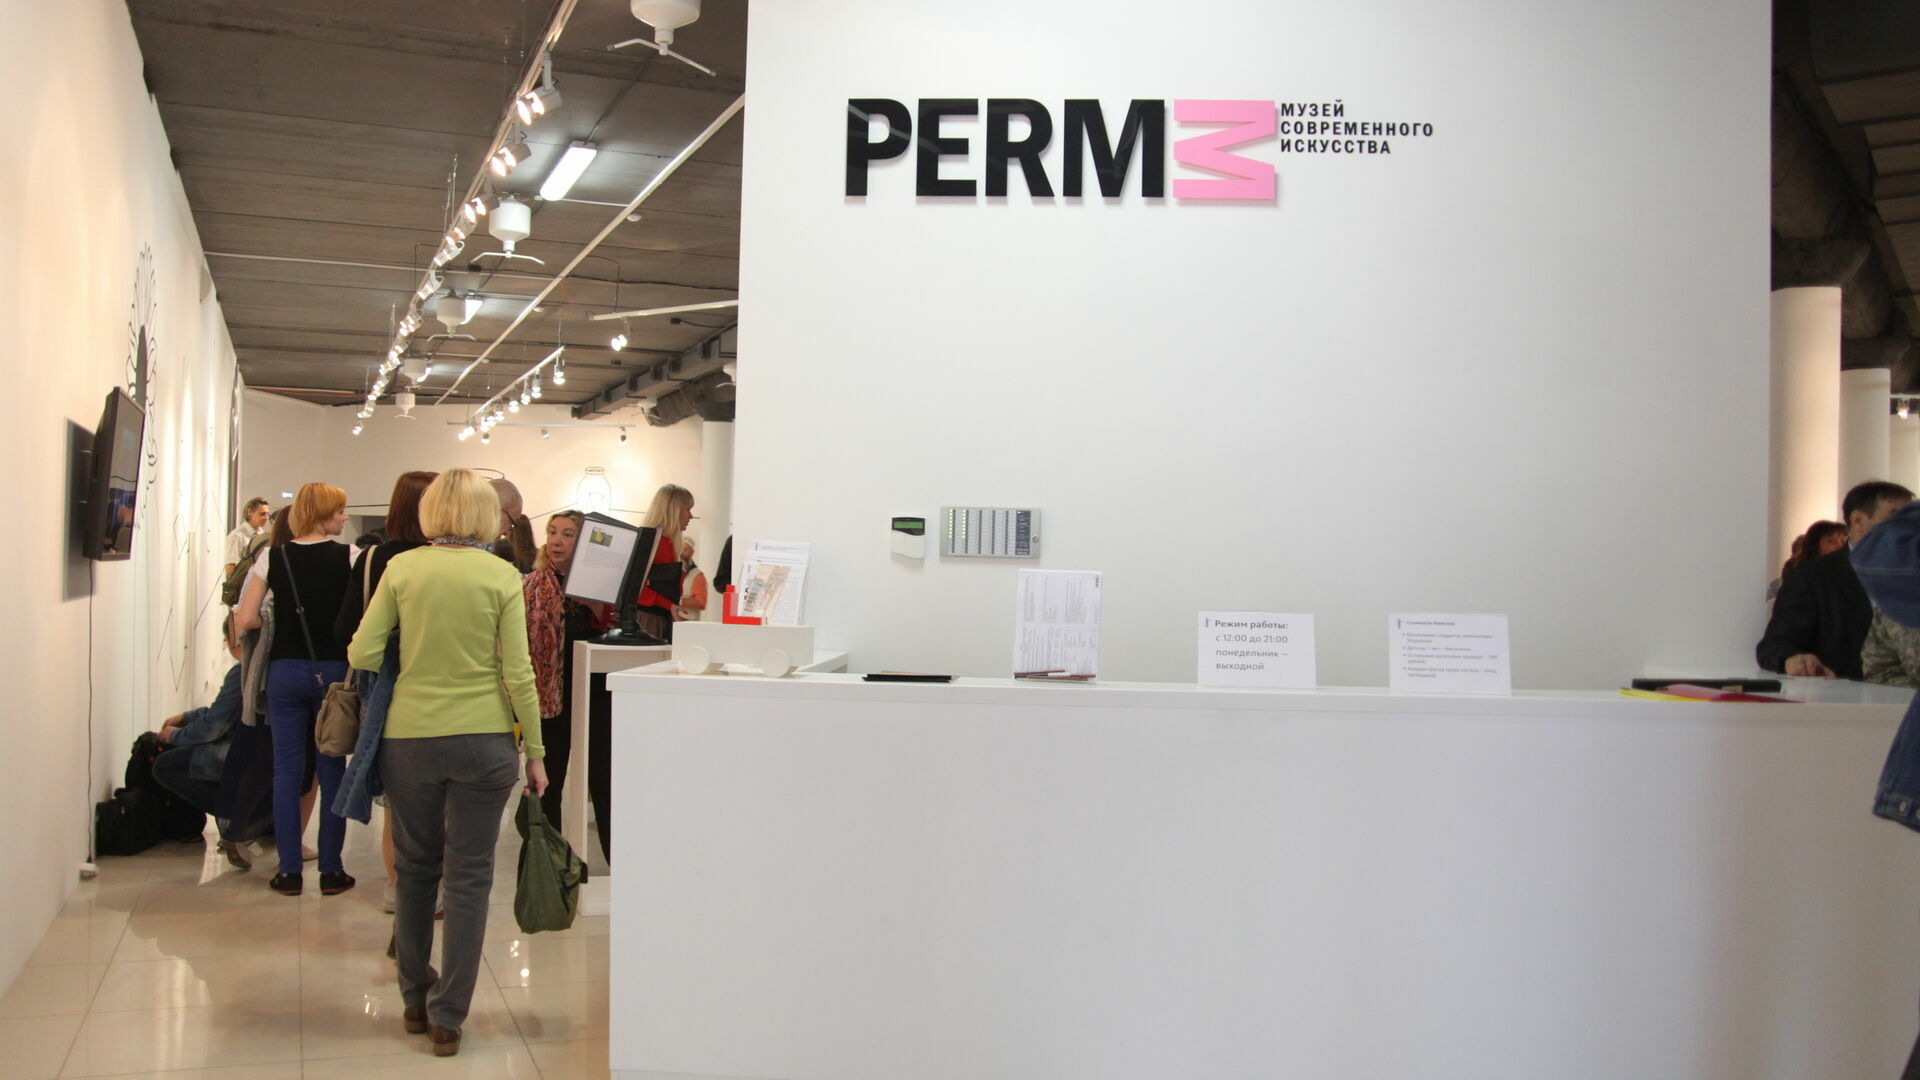 Музей PERMM съедет из здания «Сатурн-Р» после повышения аренды до 2 млн рублей в месяц